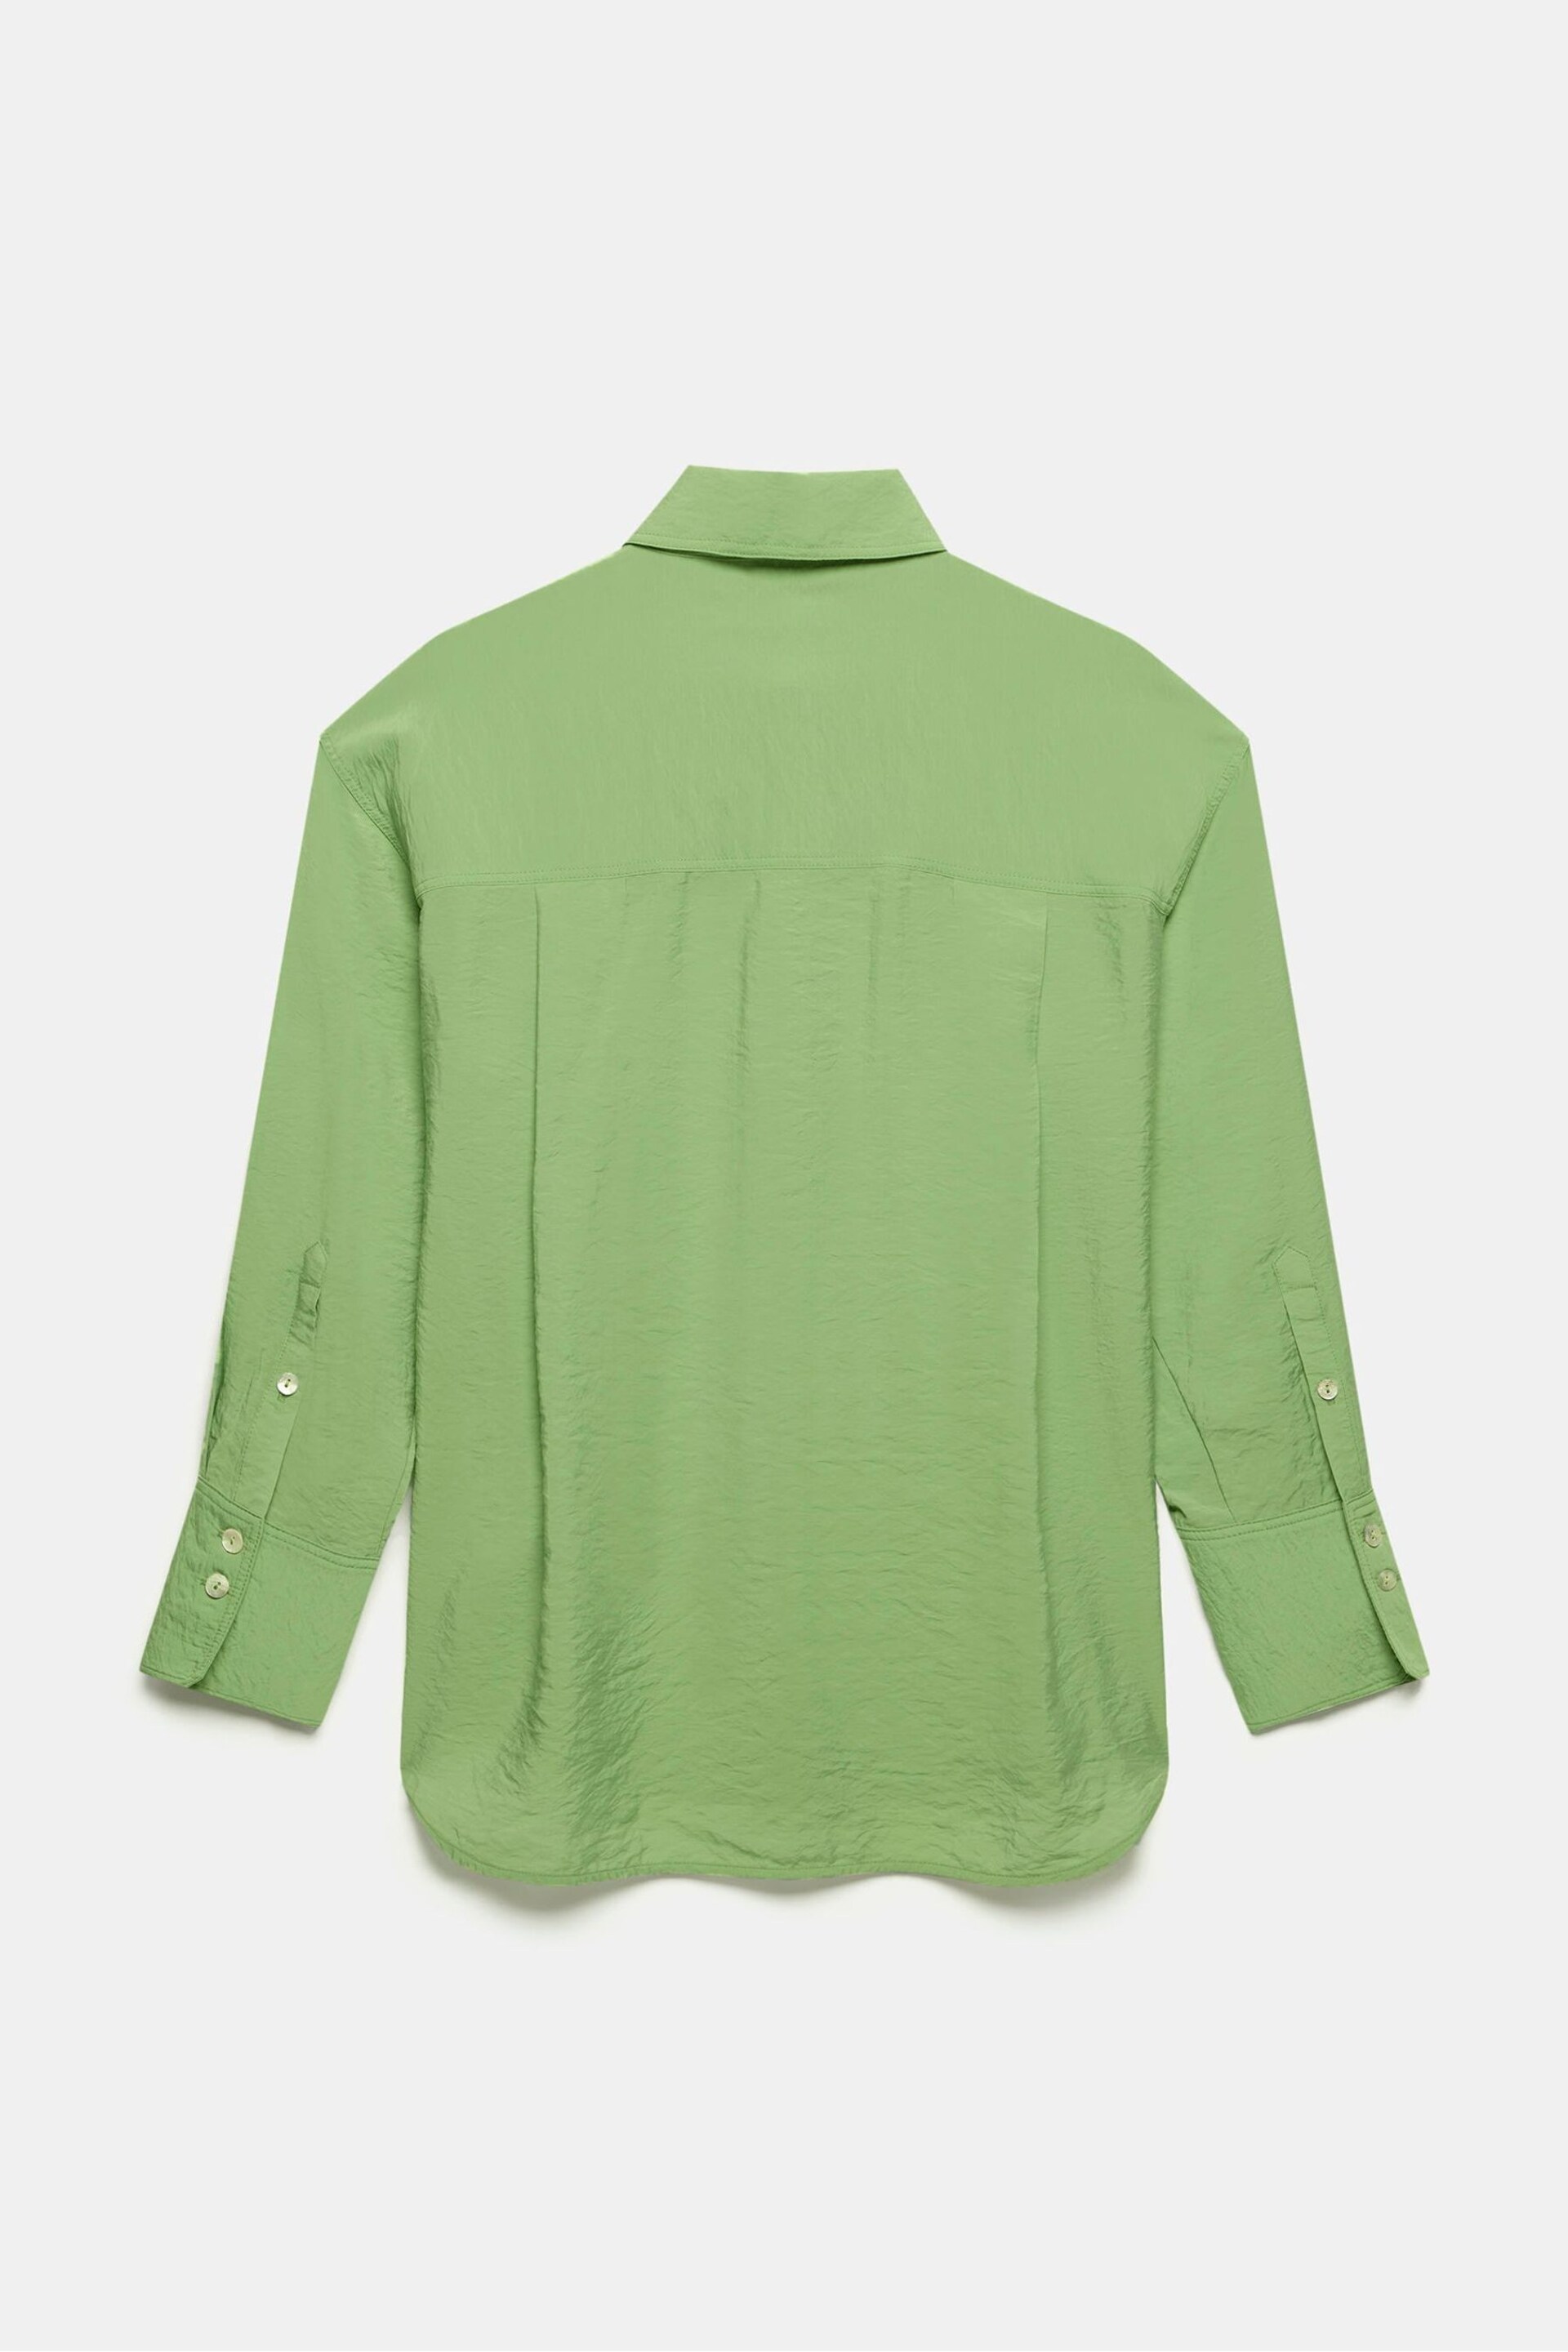 Mint Velvet Green Green Utility Detail Shirt - Image 4 of 4